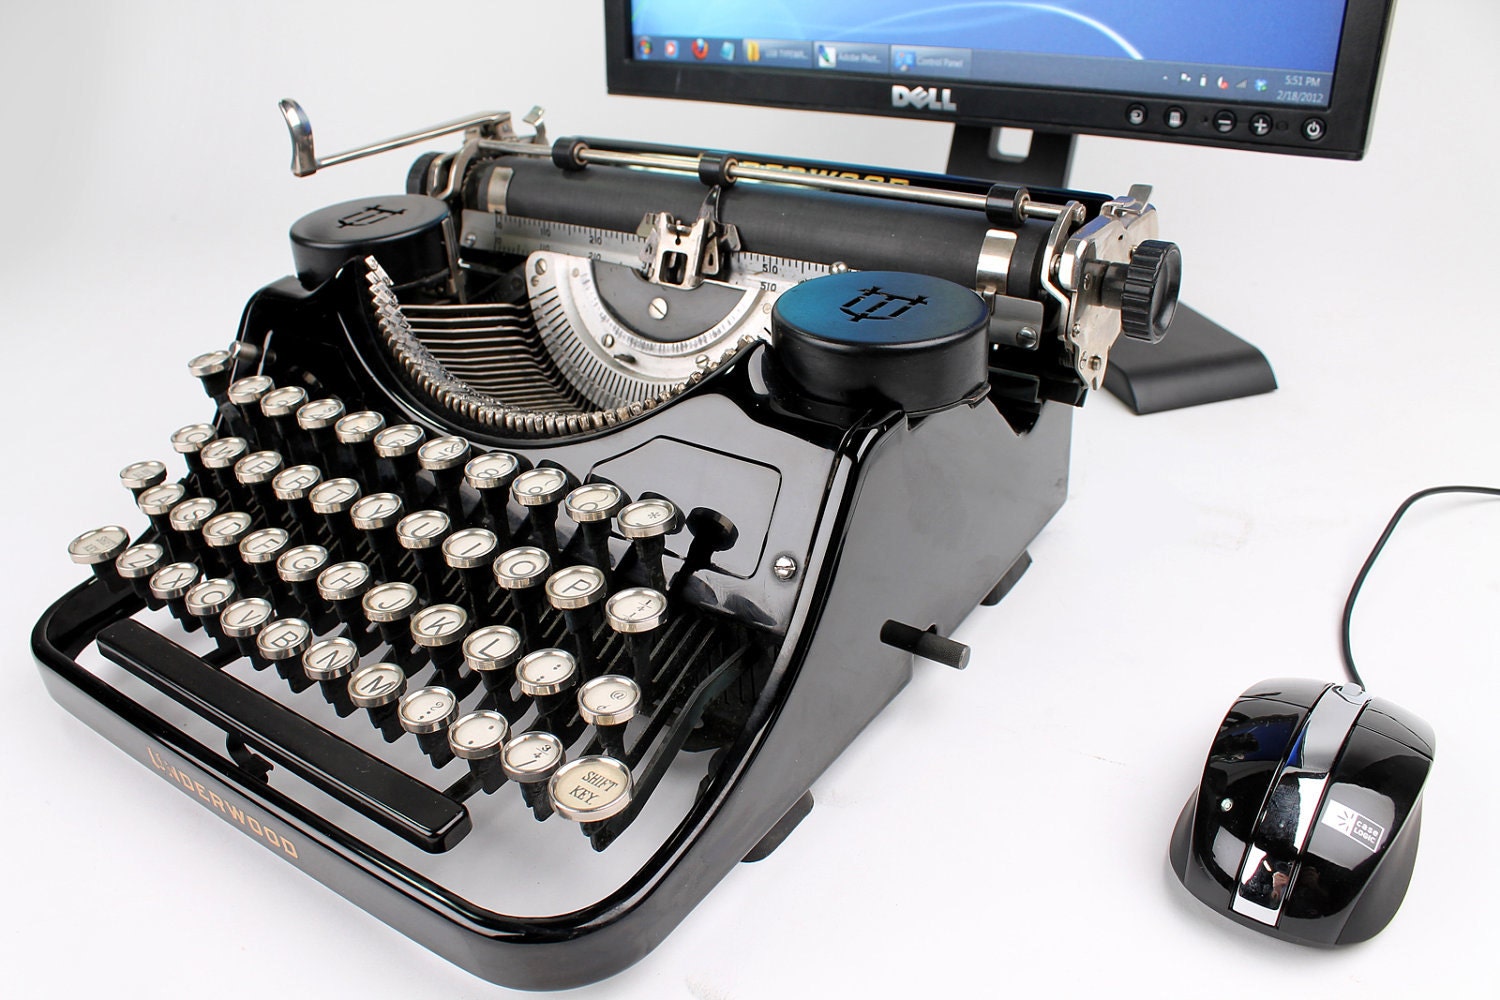 typewriter keyboard for laptop